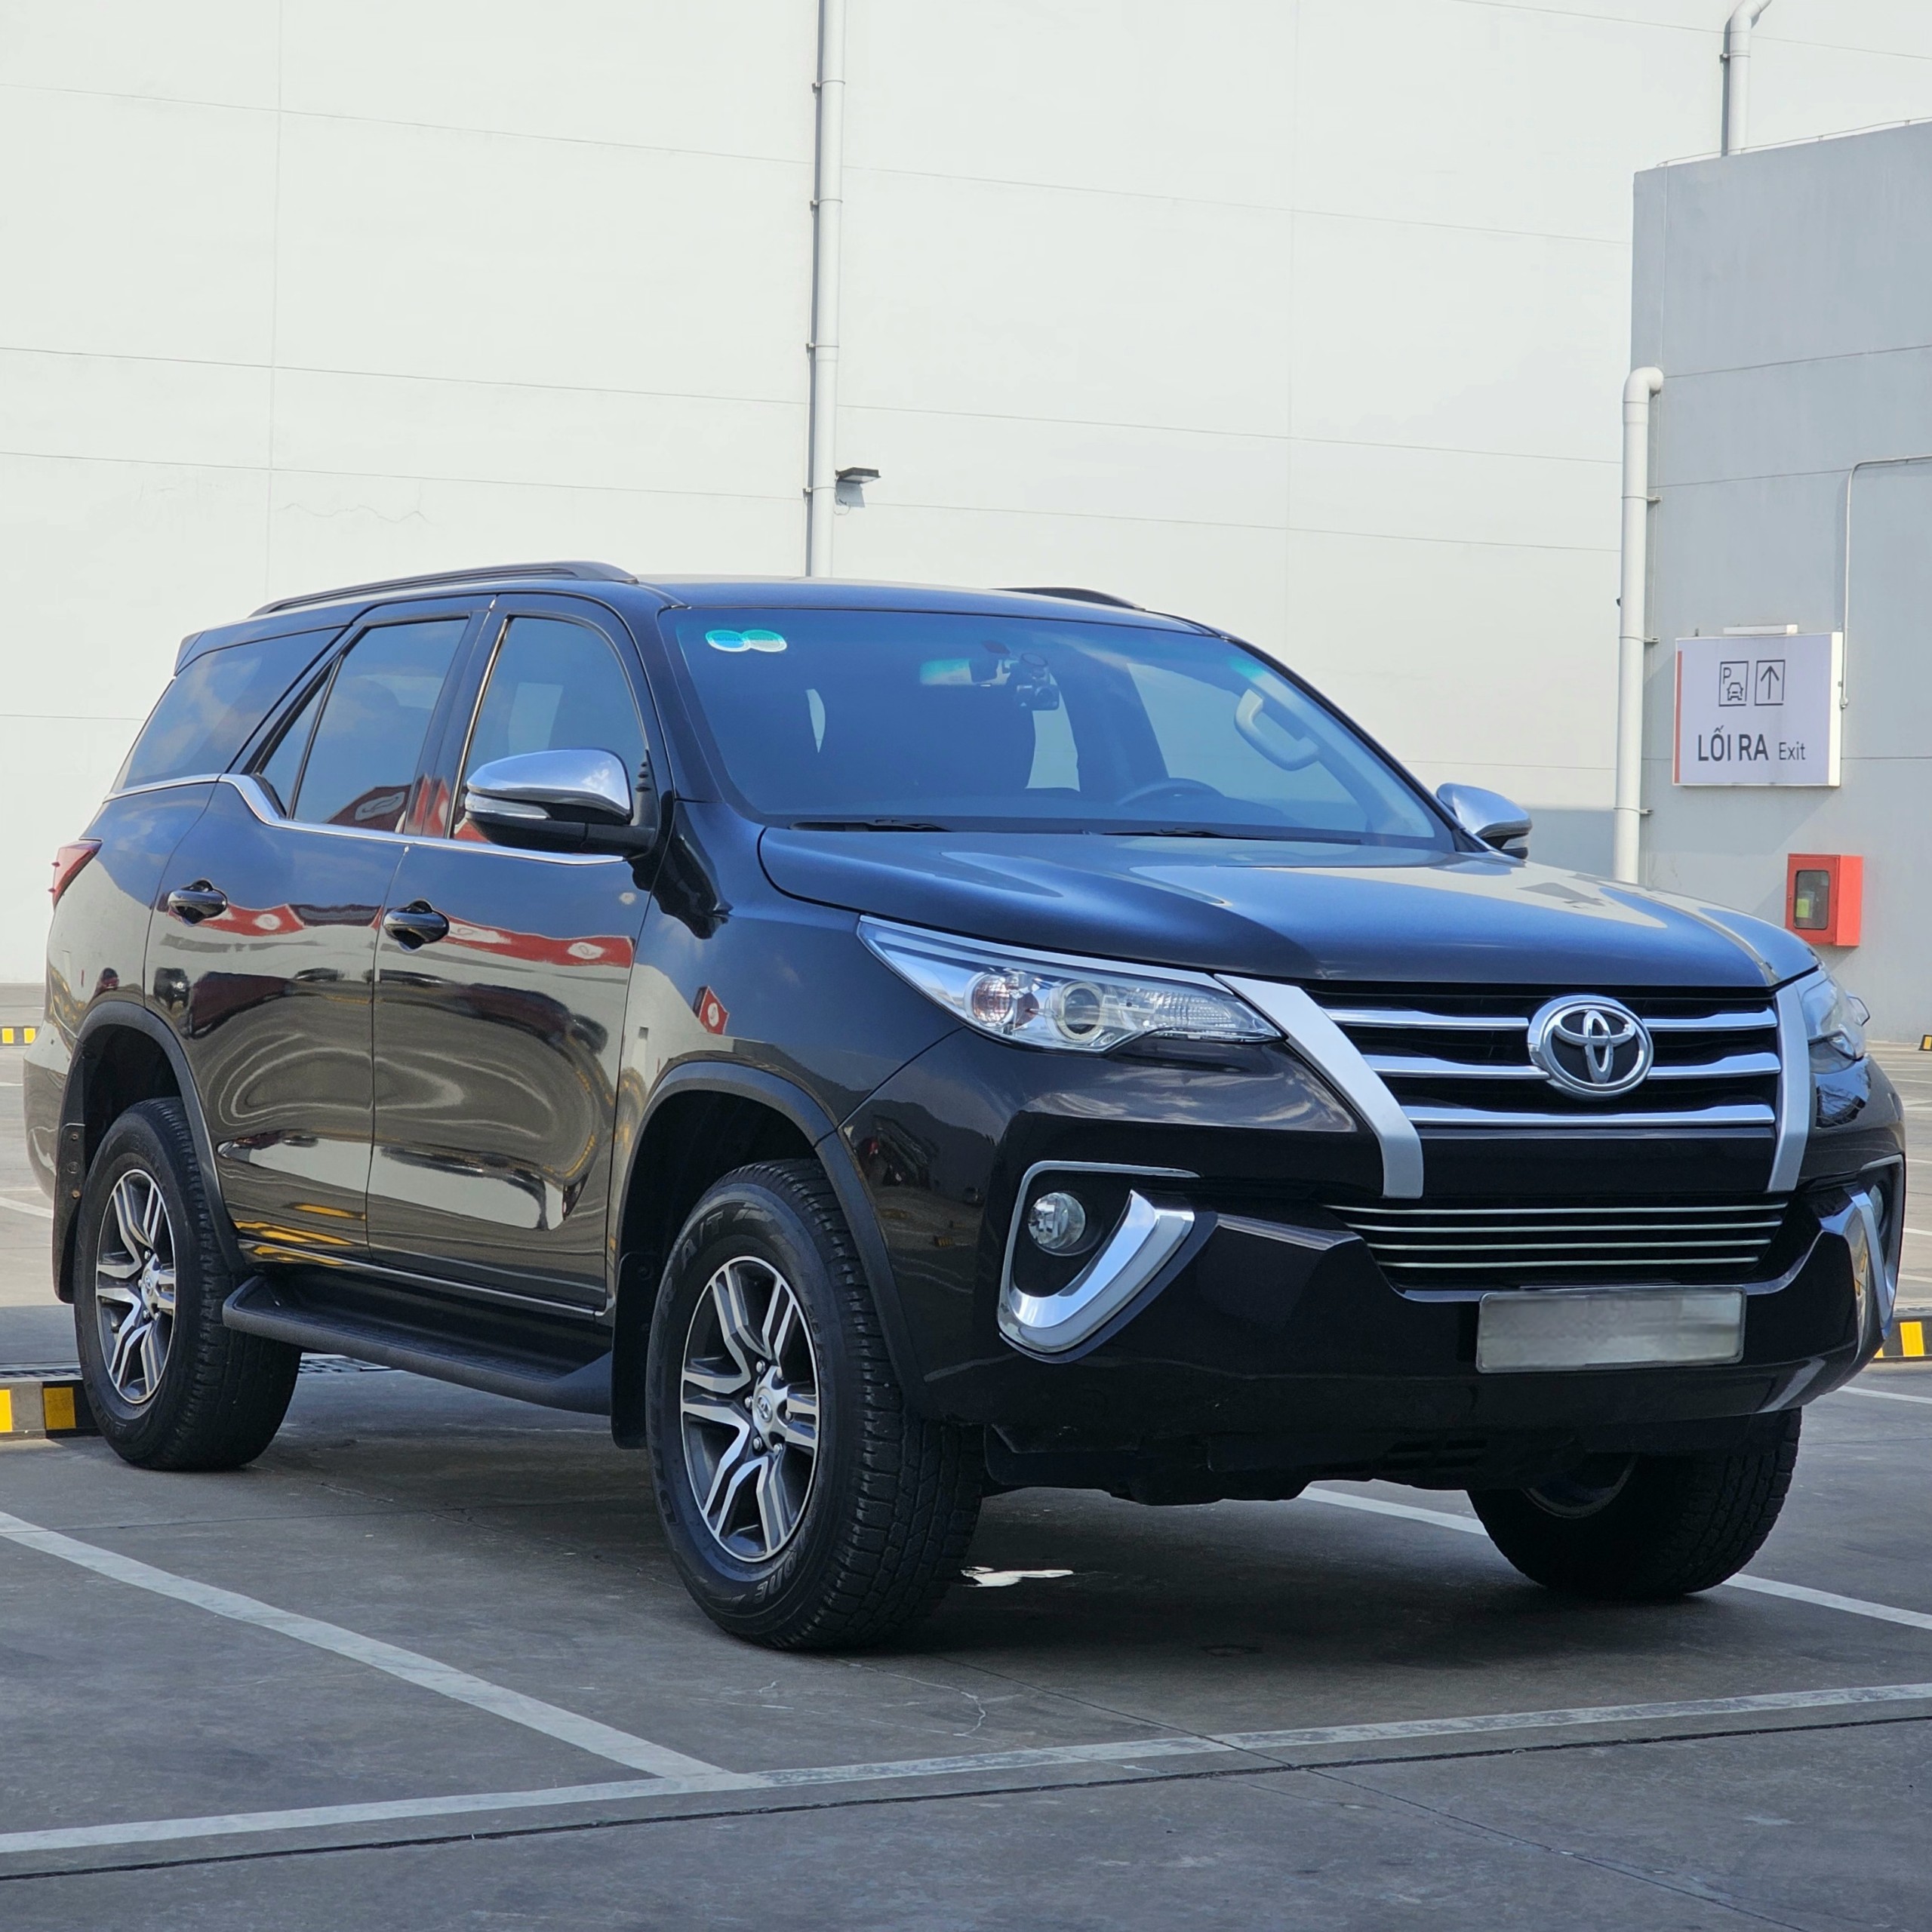 Toyota Fortuner 2.4G sàn dầu 2019 nhập khẩu Indonesia biển số trắng